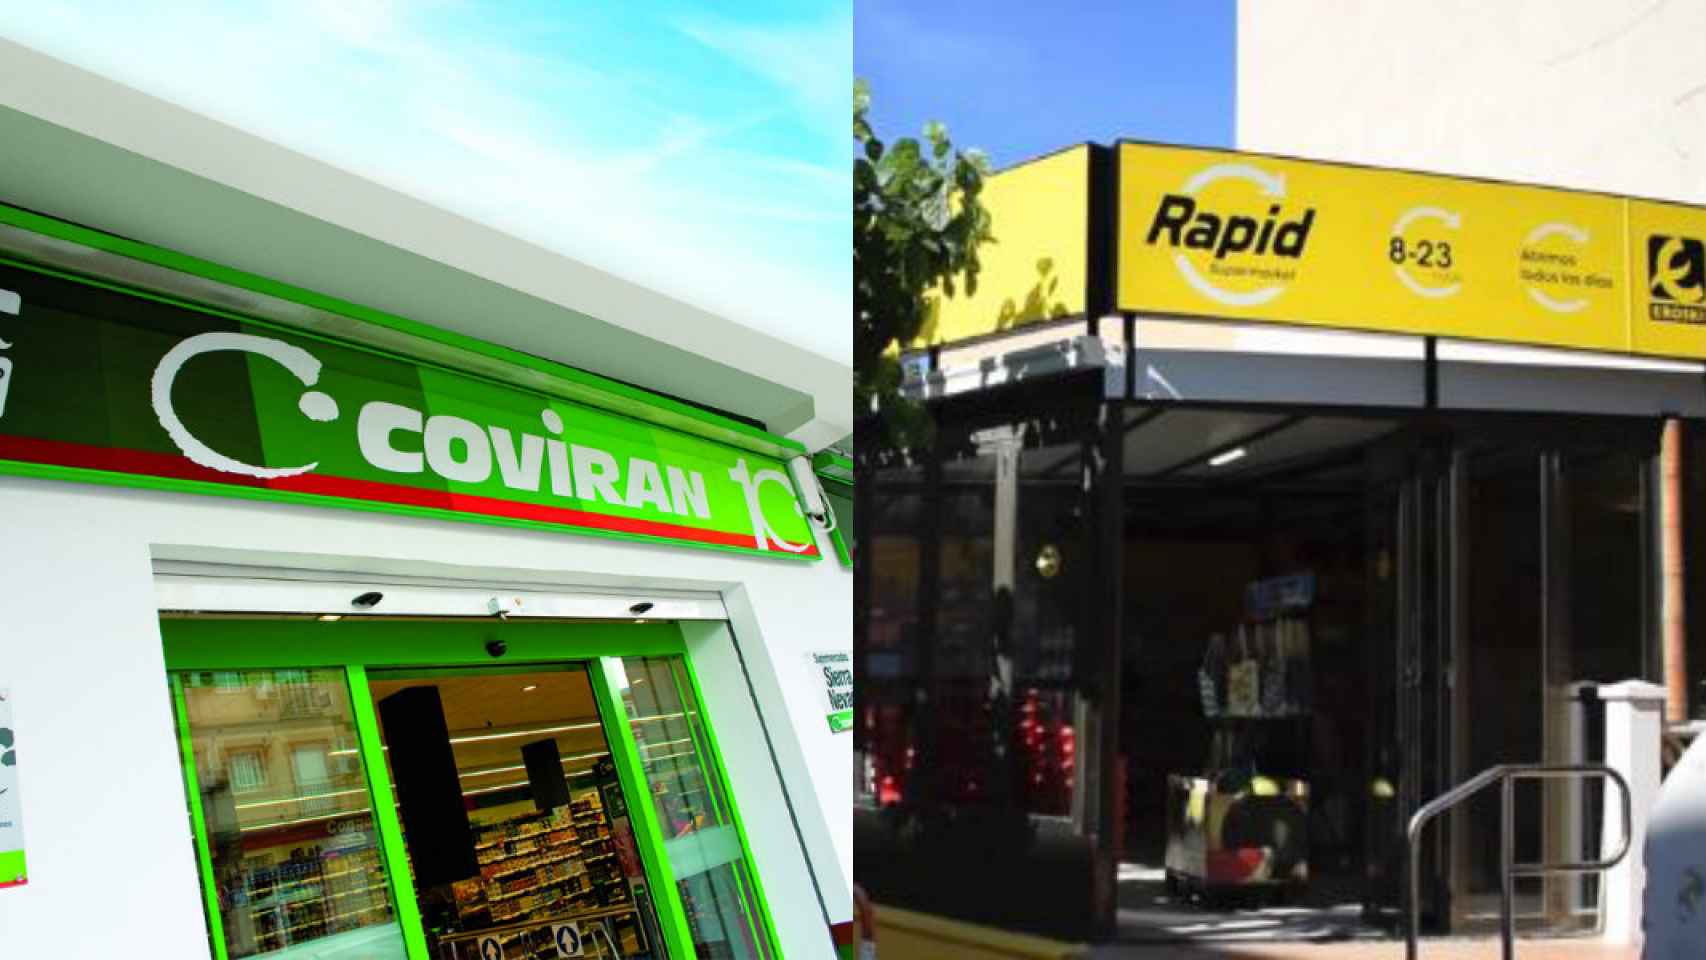 Fachadas de supermercados Covirán y Eroski Rapid.